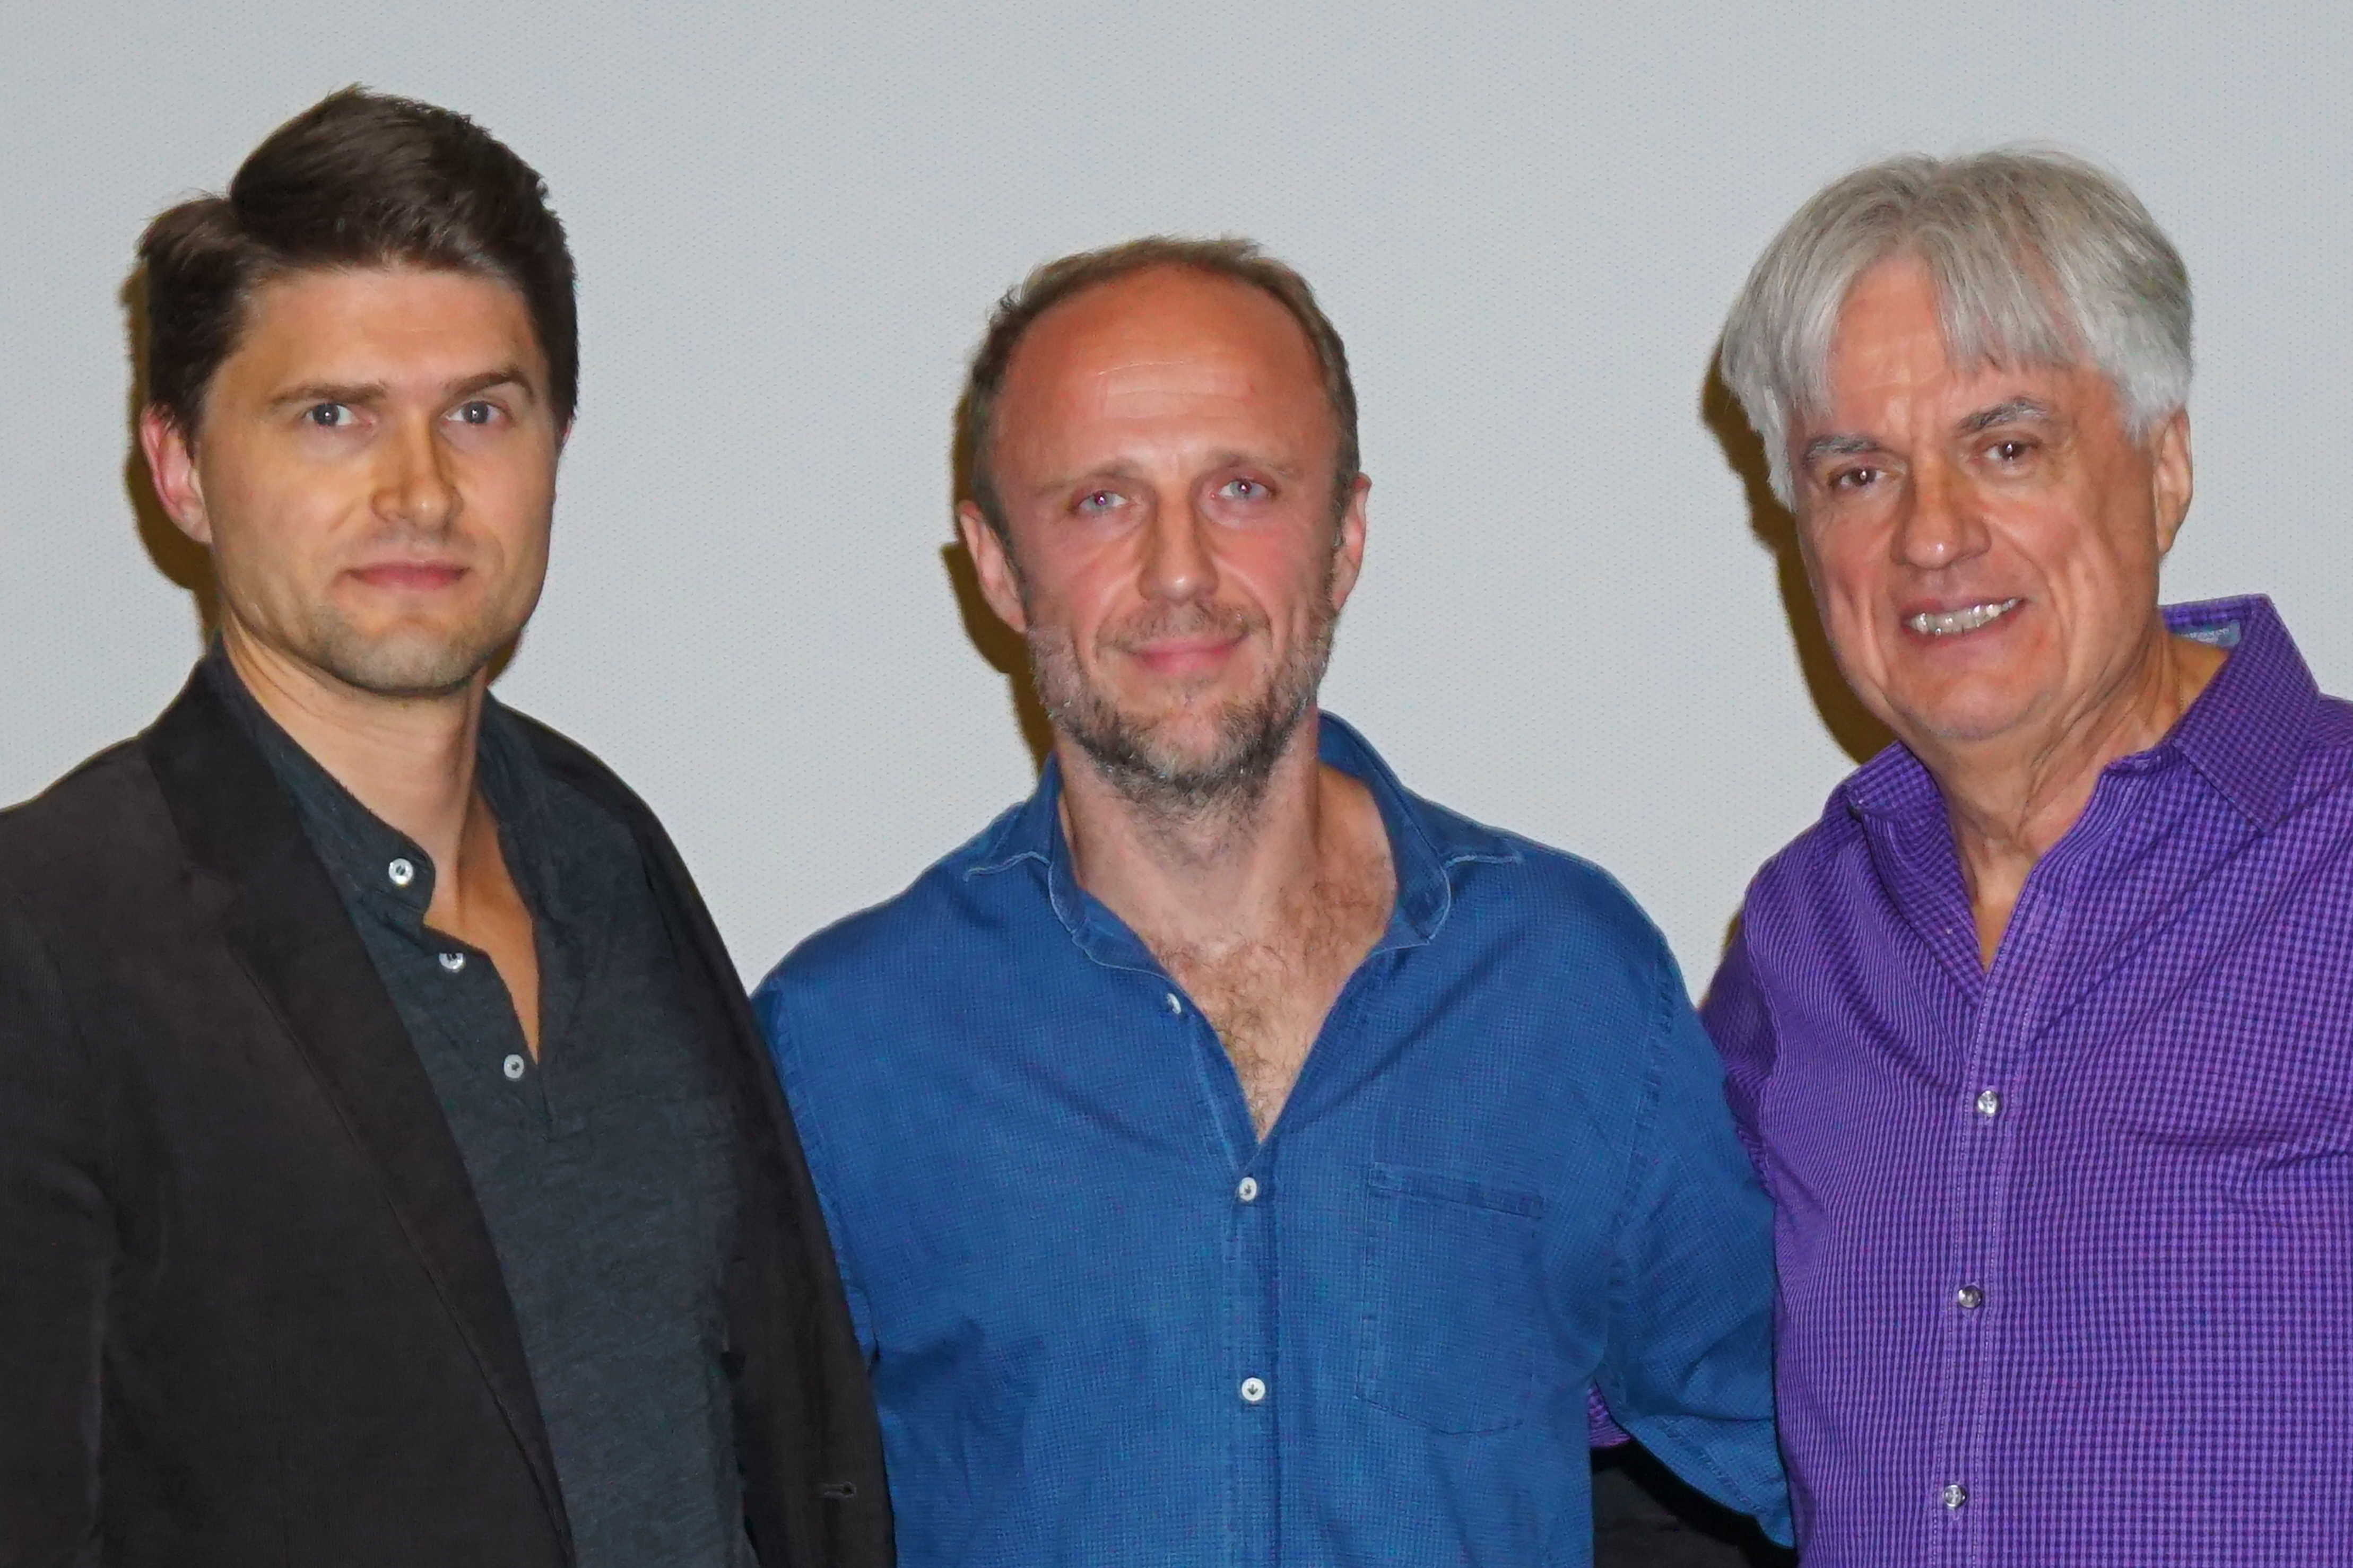 From left: Paul Kowalski (director), Lukasz Simlat (actor), Wladek Juszkiewicz (Polish Film Festival - Director) at a Q&A at the 16th Annual Polish Film Festival